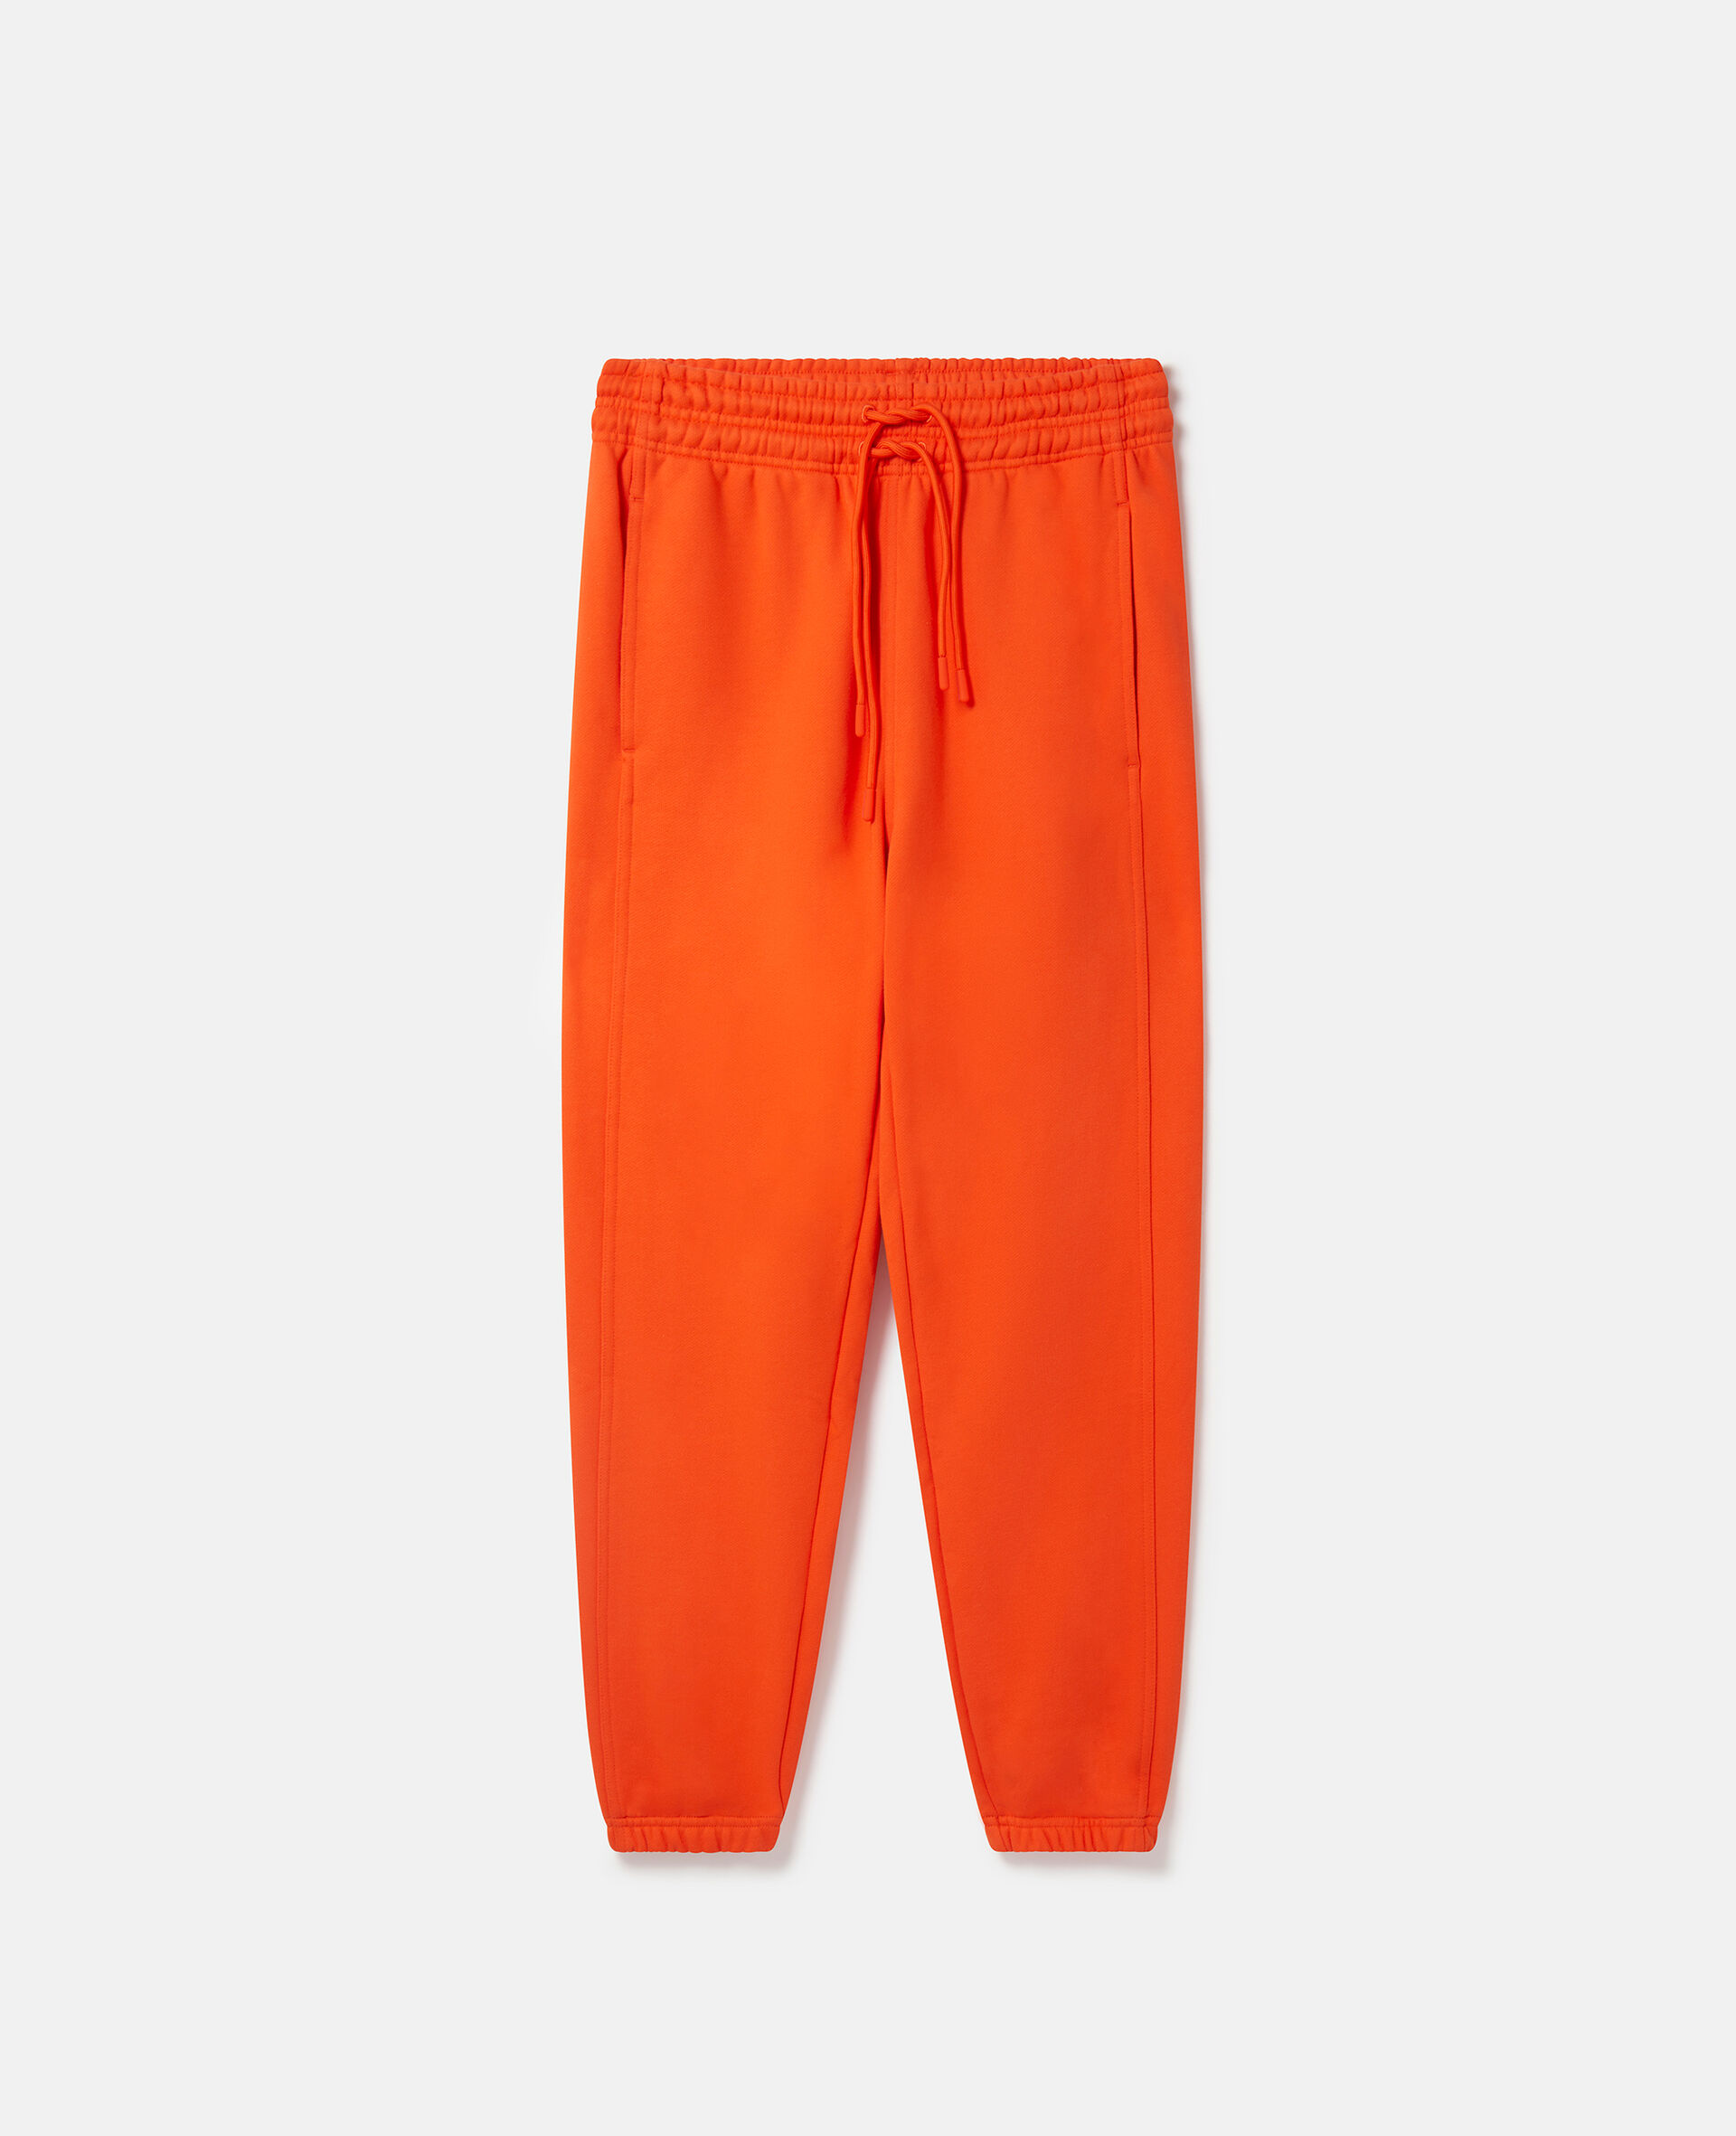 Pantaloni della tuta TrueCasuals-Arancione-medium